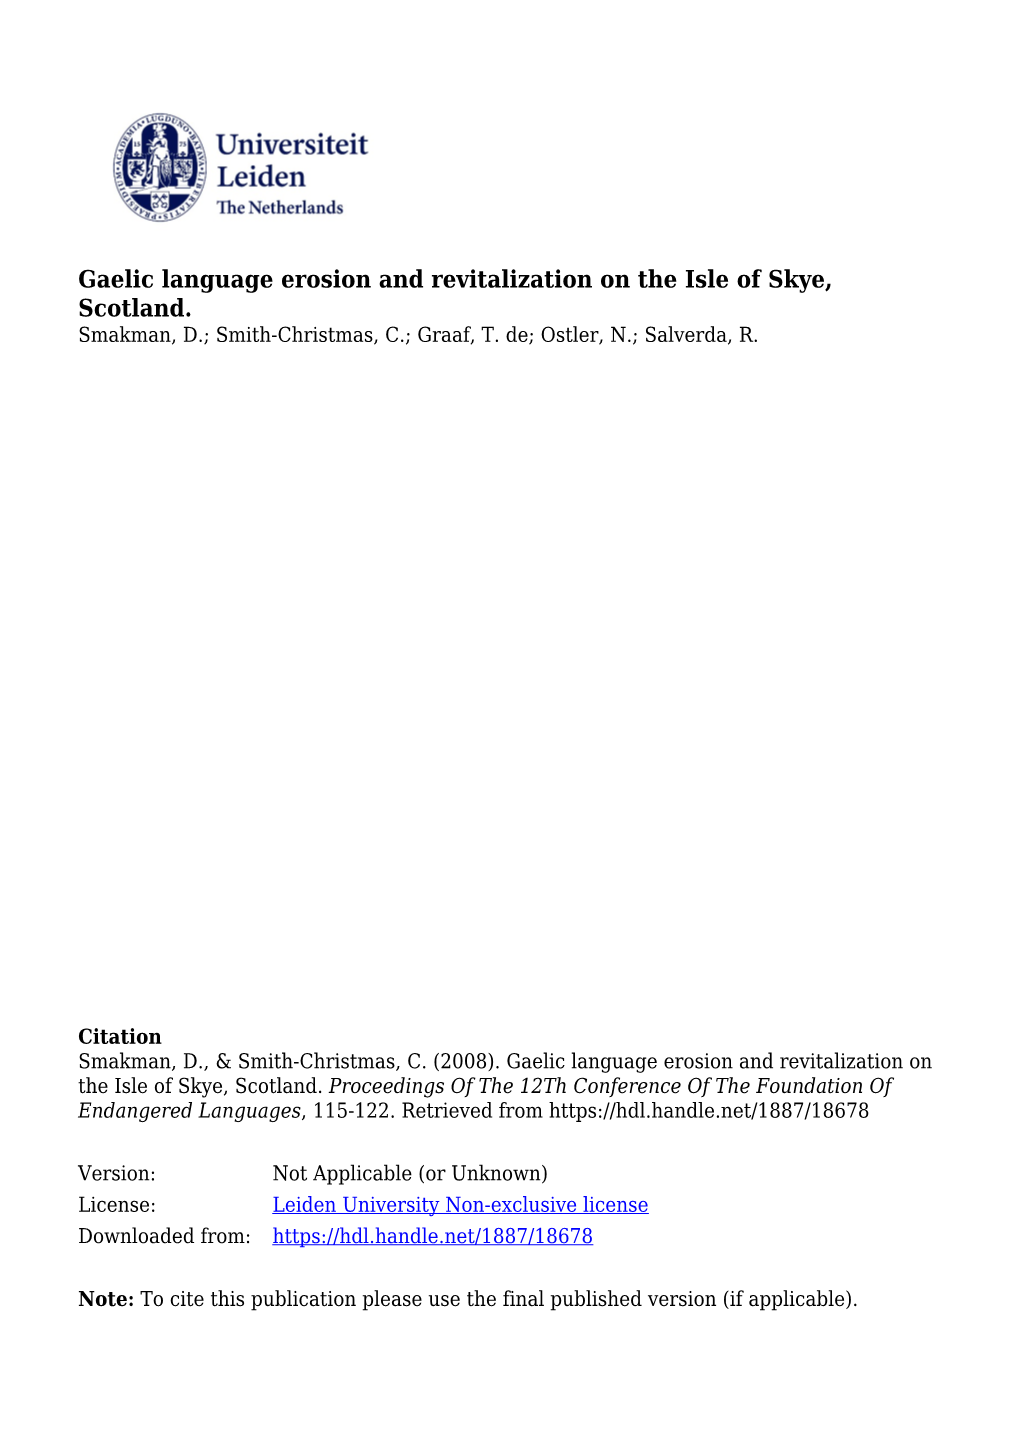 Gaelic Language Erosion and Revitalization on the Isle of Skye, Scotland